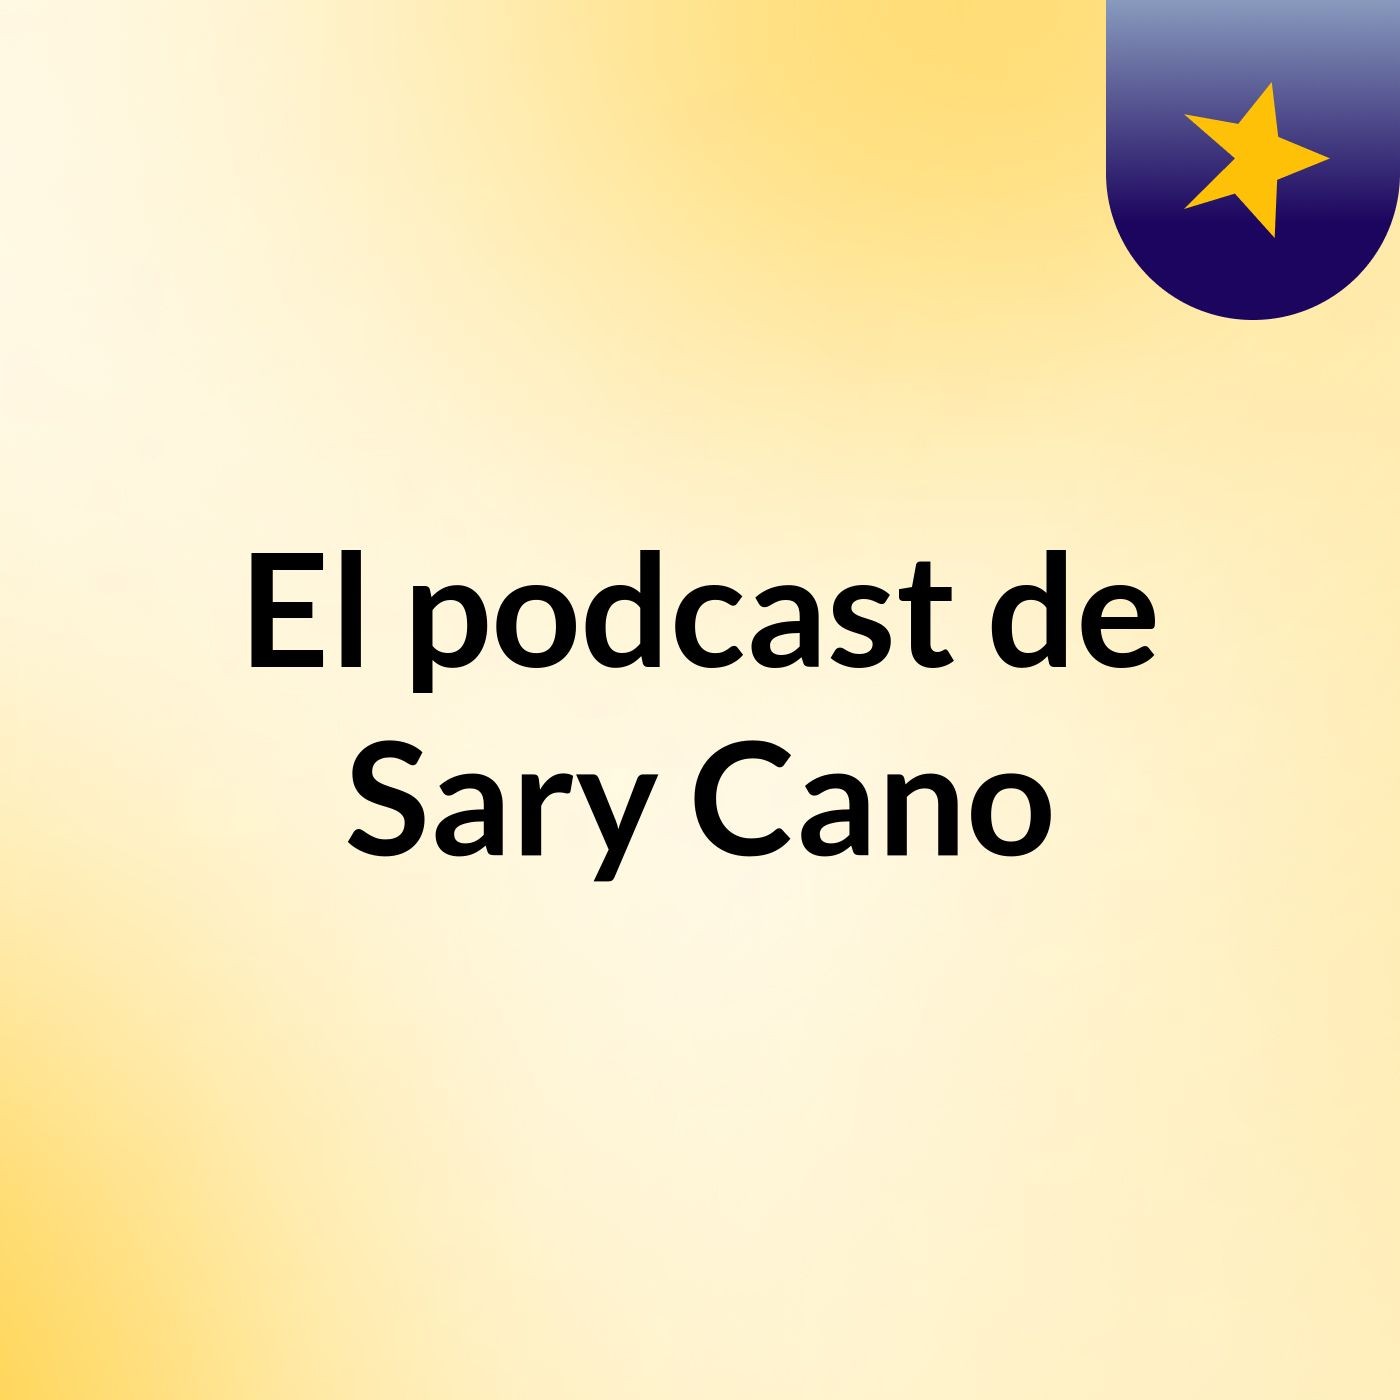 Episodio 3 - El podcast de Sary Cano